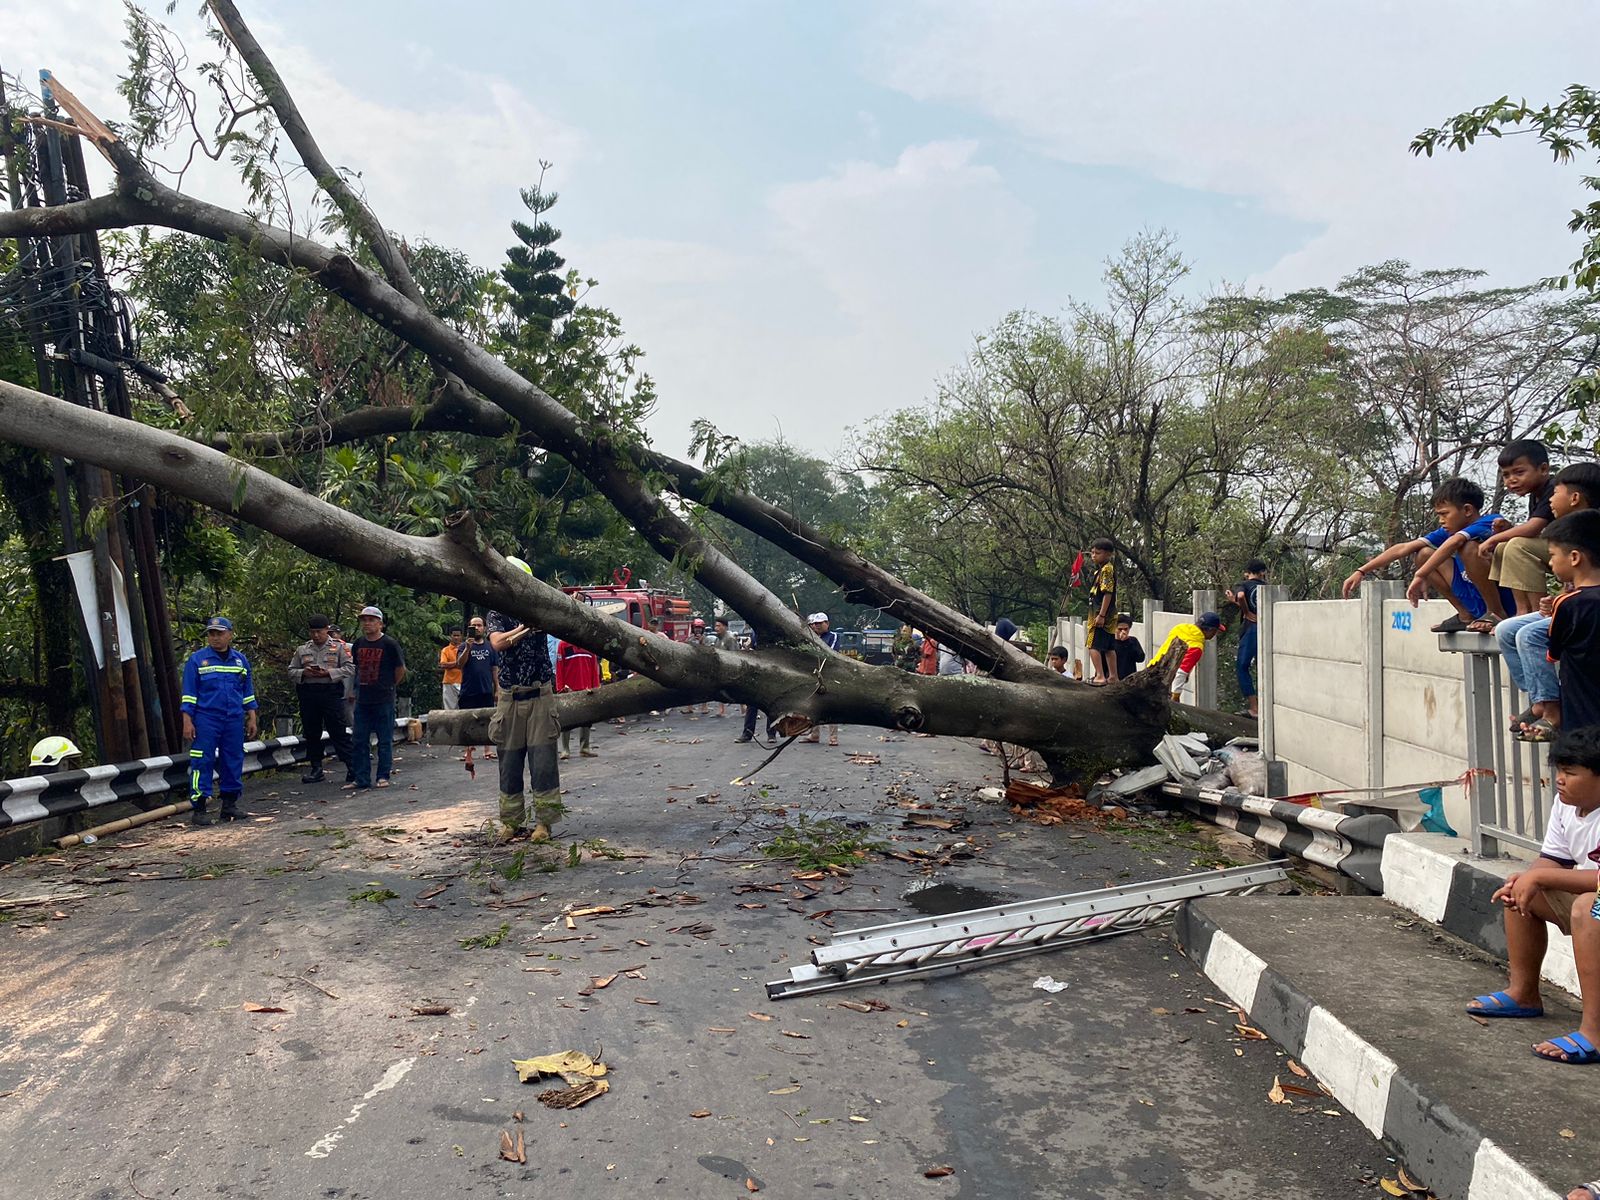 Pohon tumbang di kawasan Jembatan Cinta, Kelurahan Cigondewah Rahayu, Kecamatan Bandung Kulon, Kota Bandung, pada Rabu (25/10) kemarin.